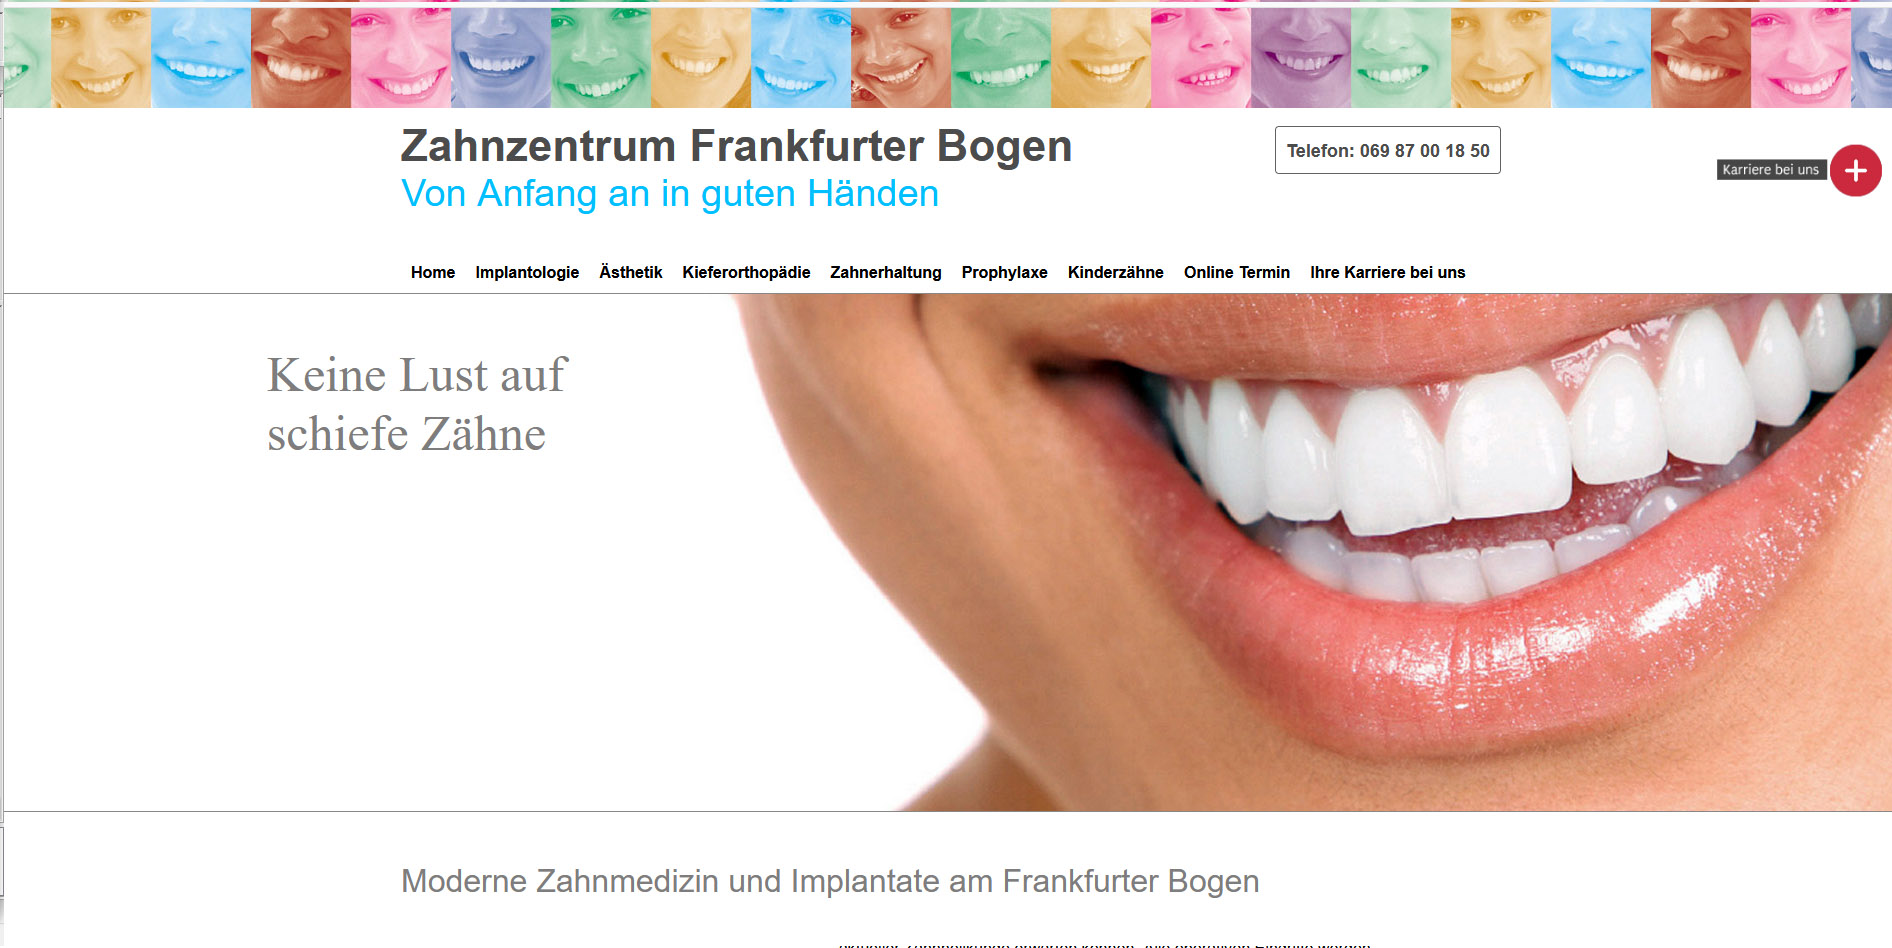 Zahnzentrum Frankfurter Bogen